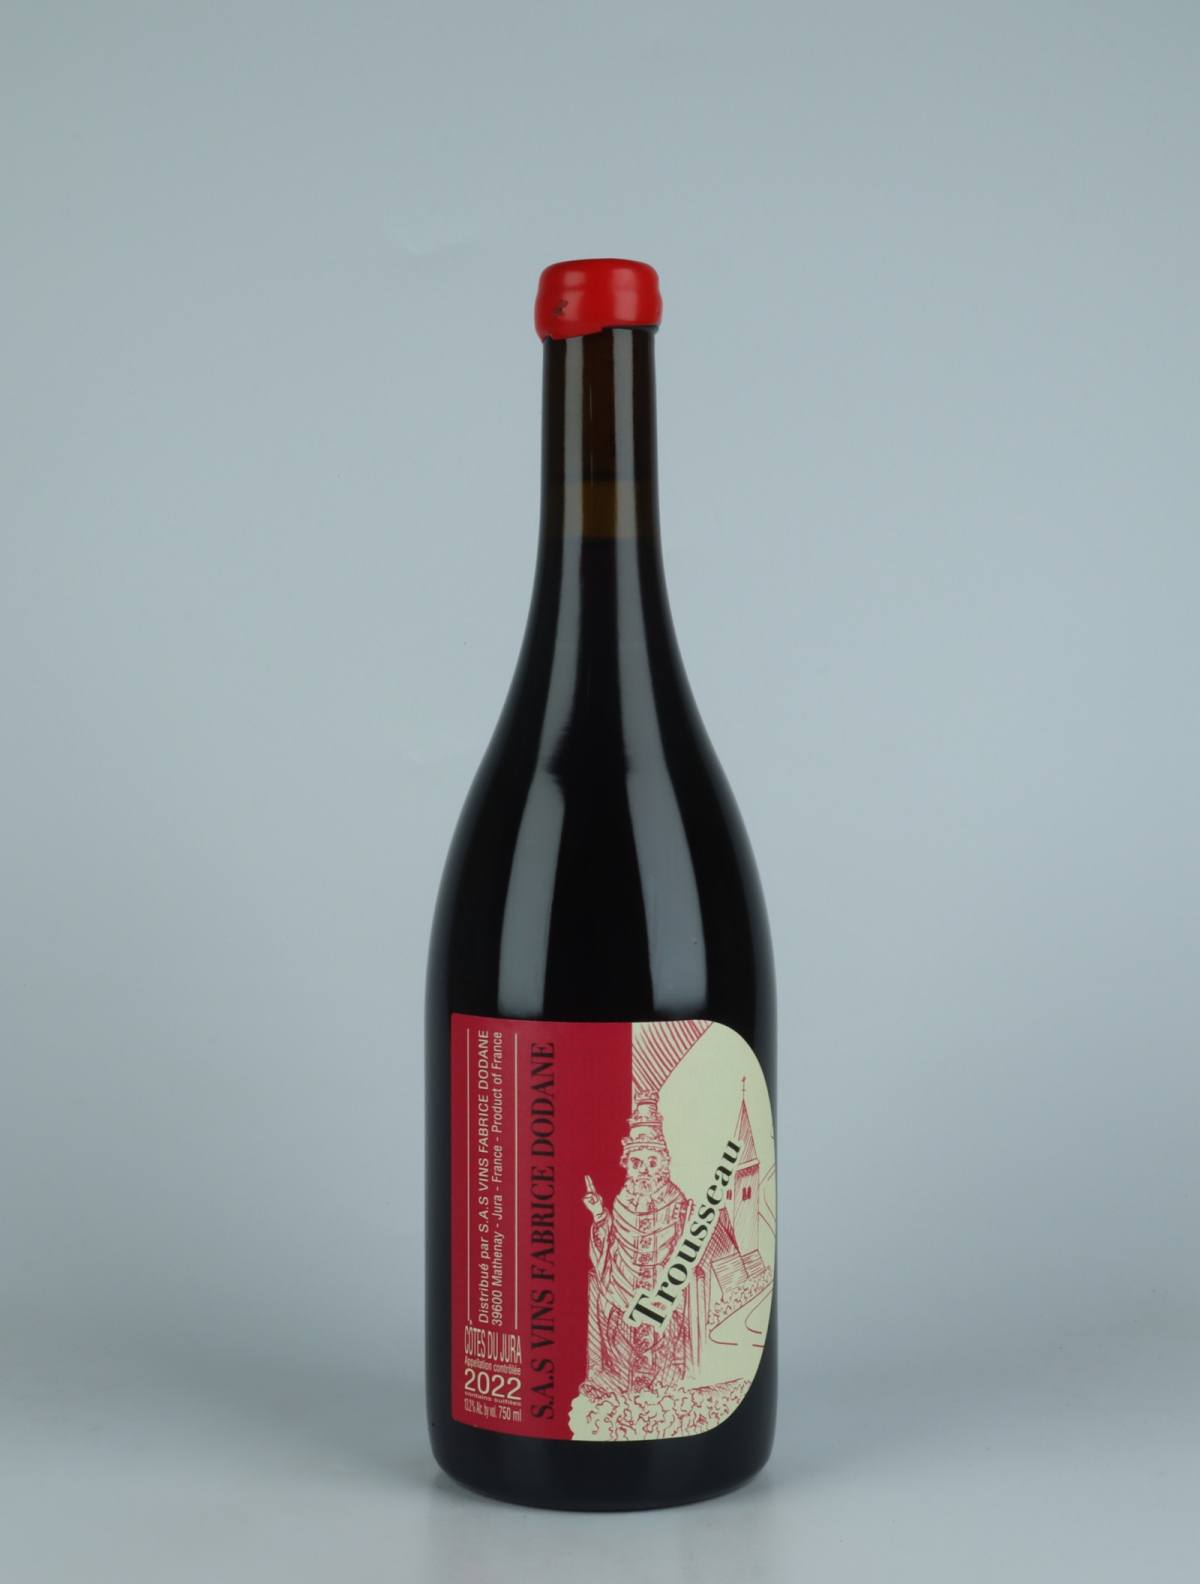 En flaske 2022 Côtes du Jura Rouge - Trousseau Rødvin fra Fabrice Dodane, Jura i Frankrig